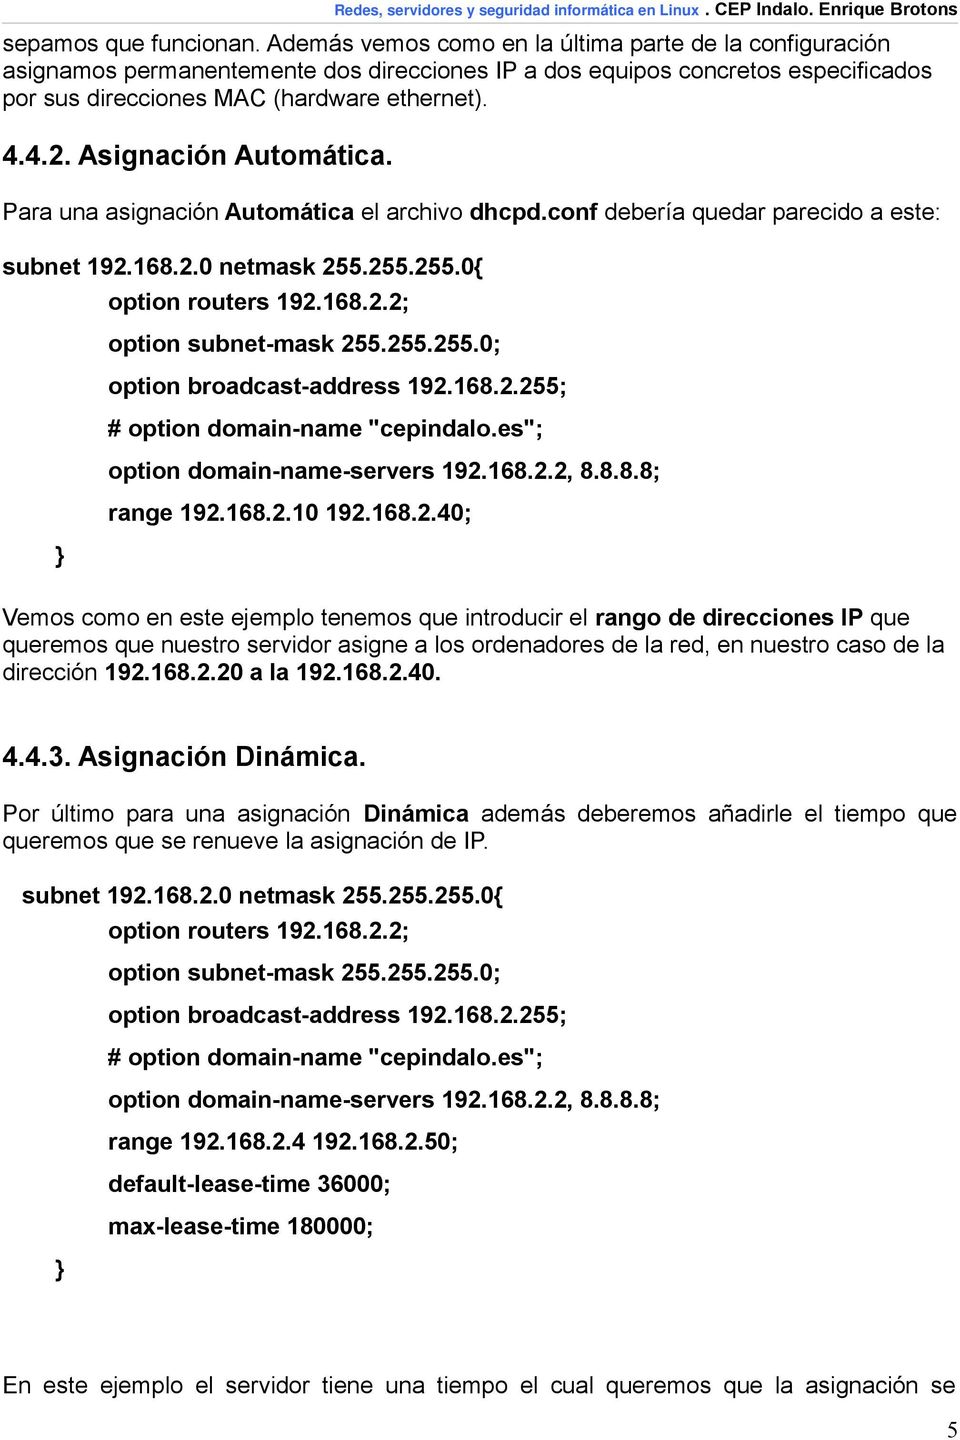 Asignación Automática. Para una asignación Automática el archivo dhcpd.conf debería quedar parecido a este: subnet 192.168.2.0 netmask 255.255.255.0{ } option routers 192.168.2.2; option subnet-mask 255.